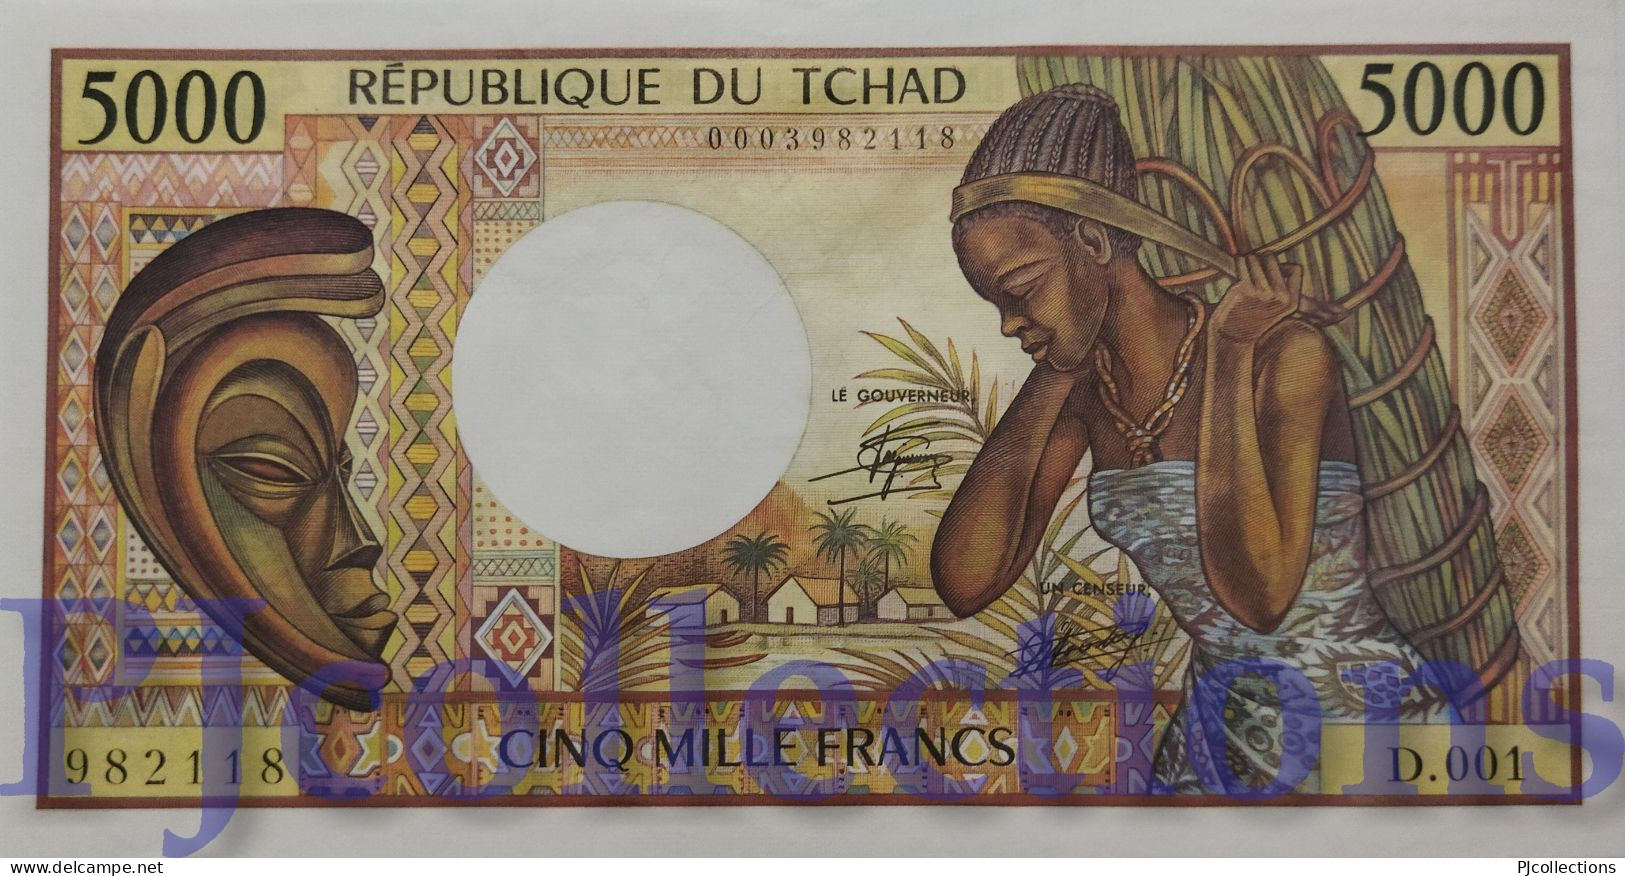 CHAD 5000 FRANCS 1984/85 PICK 11 AUNC - Tchad